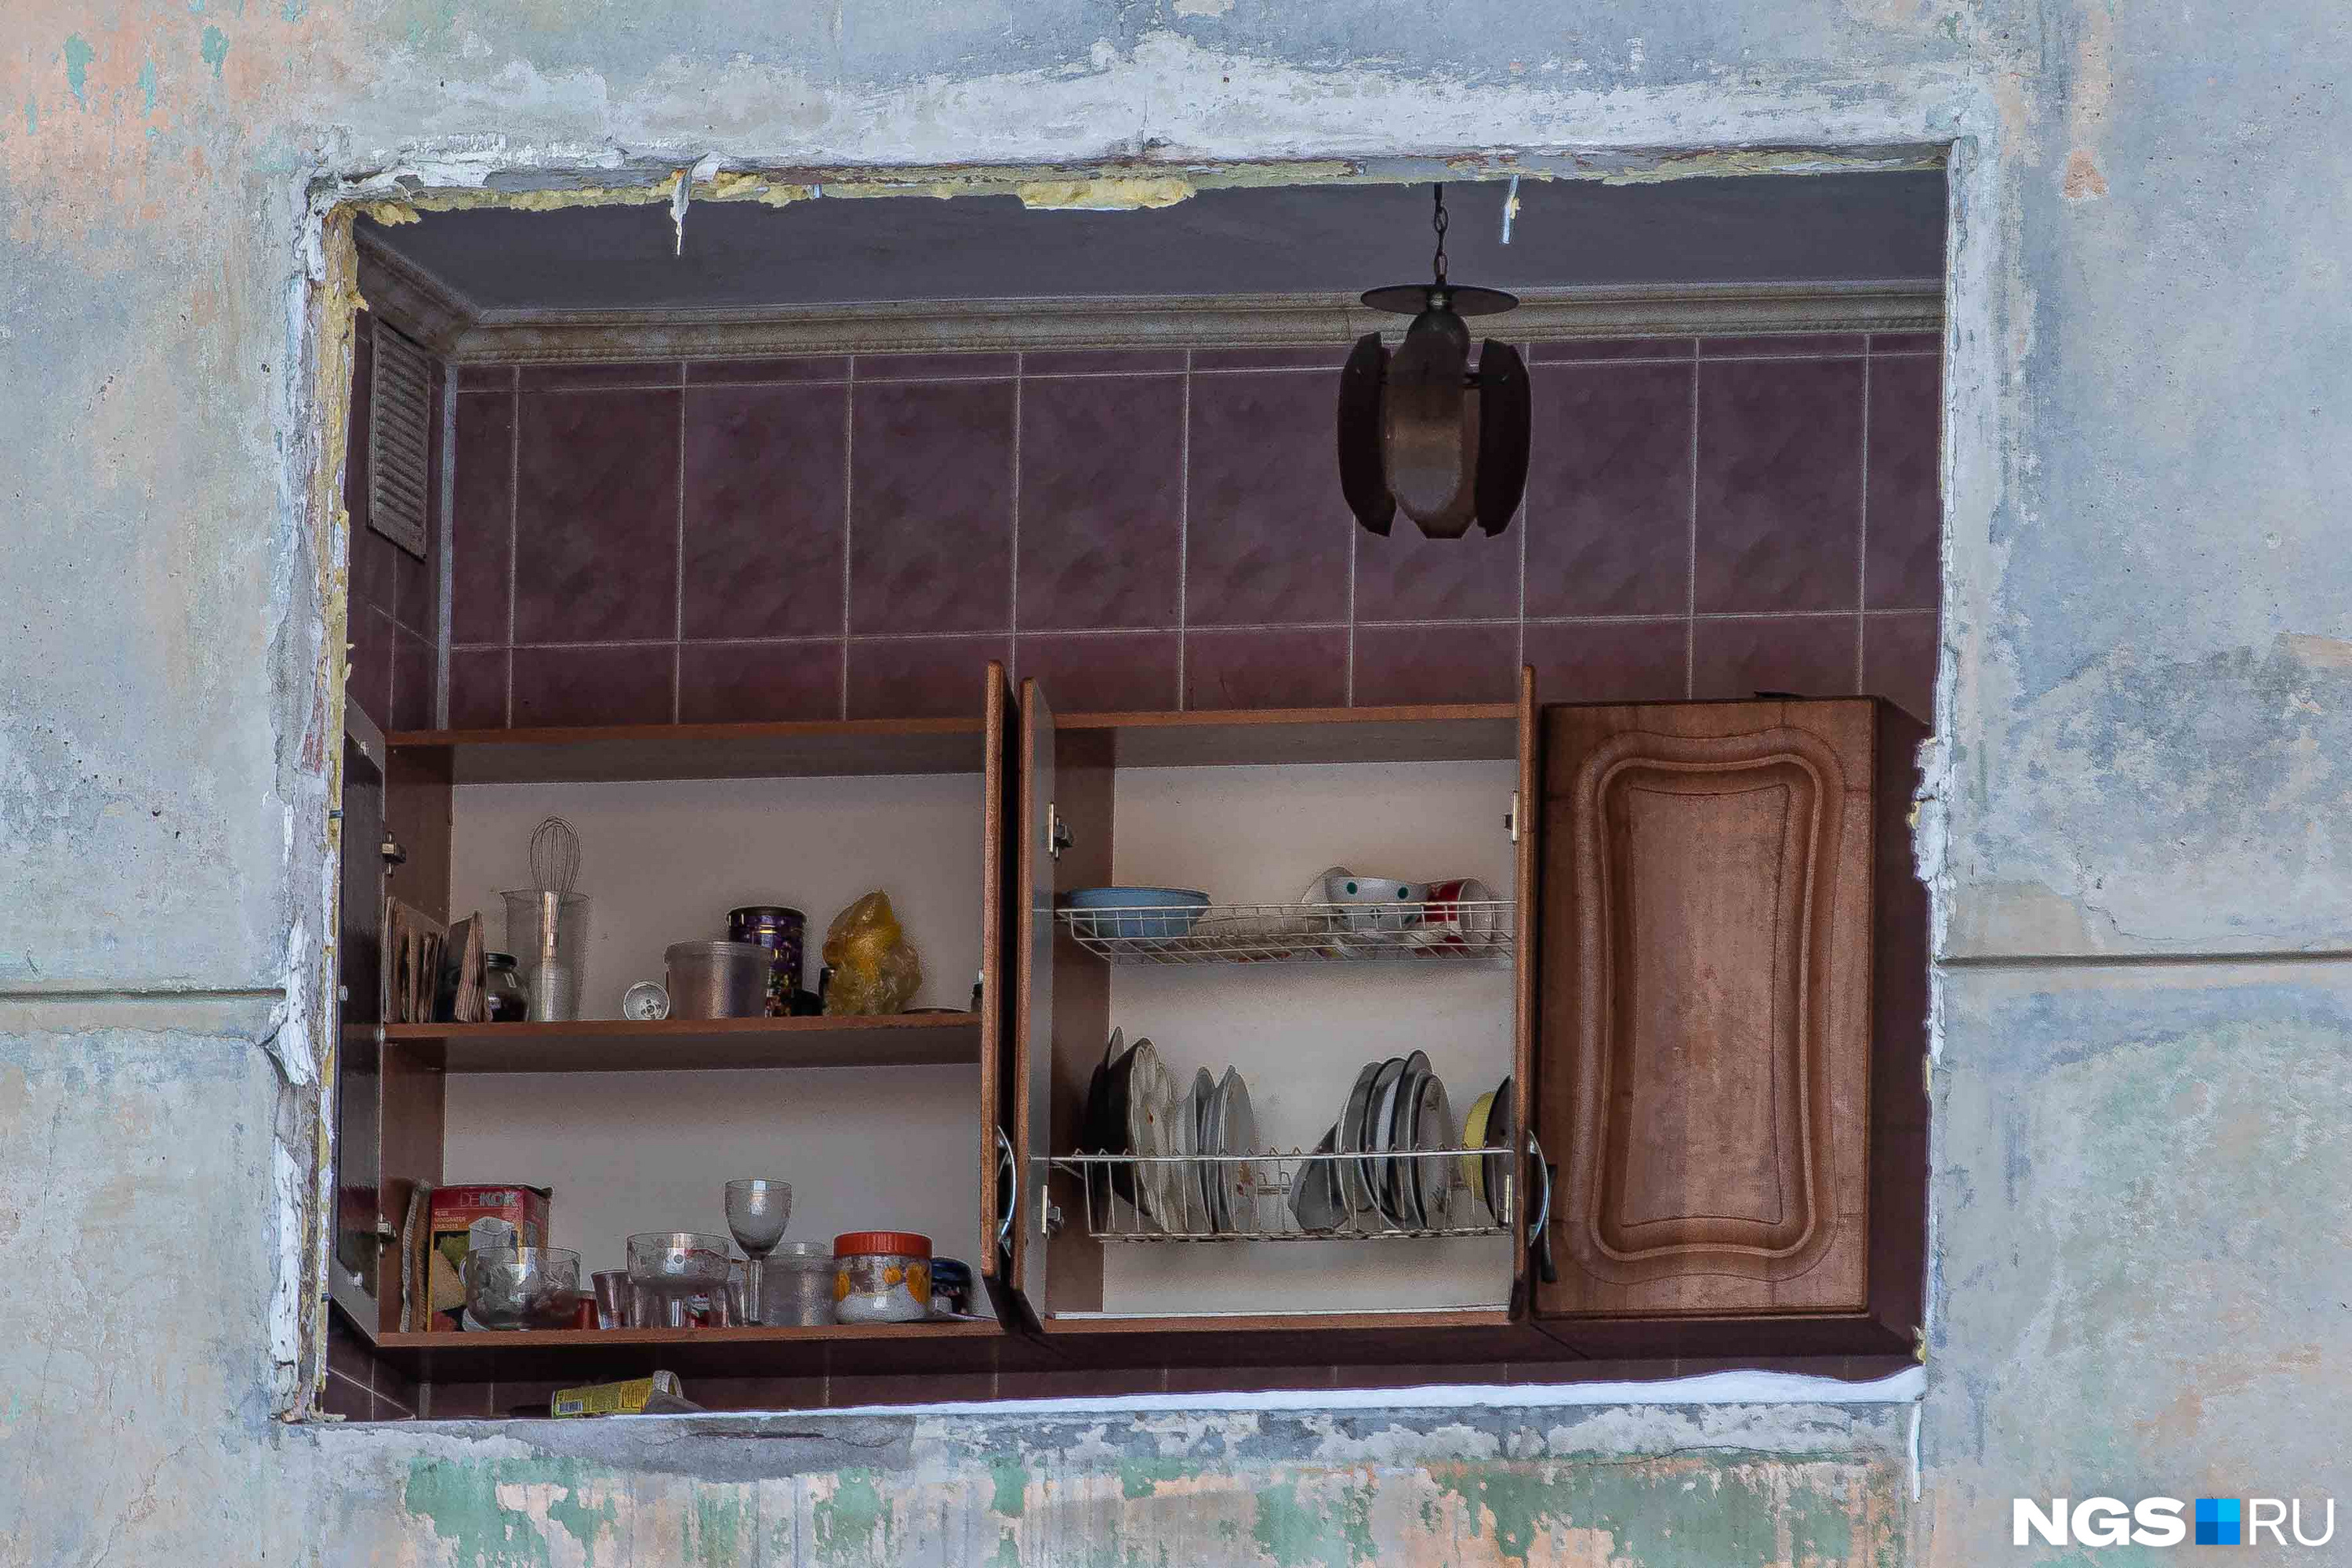 Сквозь выбитые окна можно увидеть остатки былой жизни в квартирах